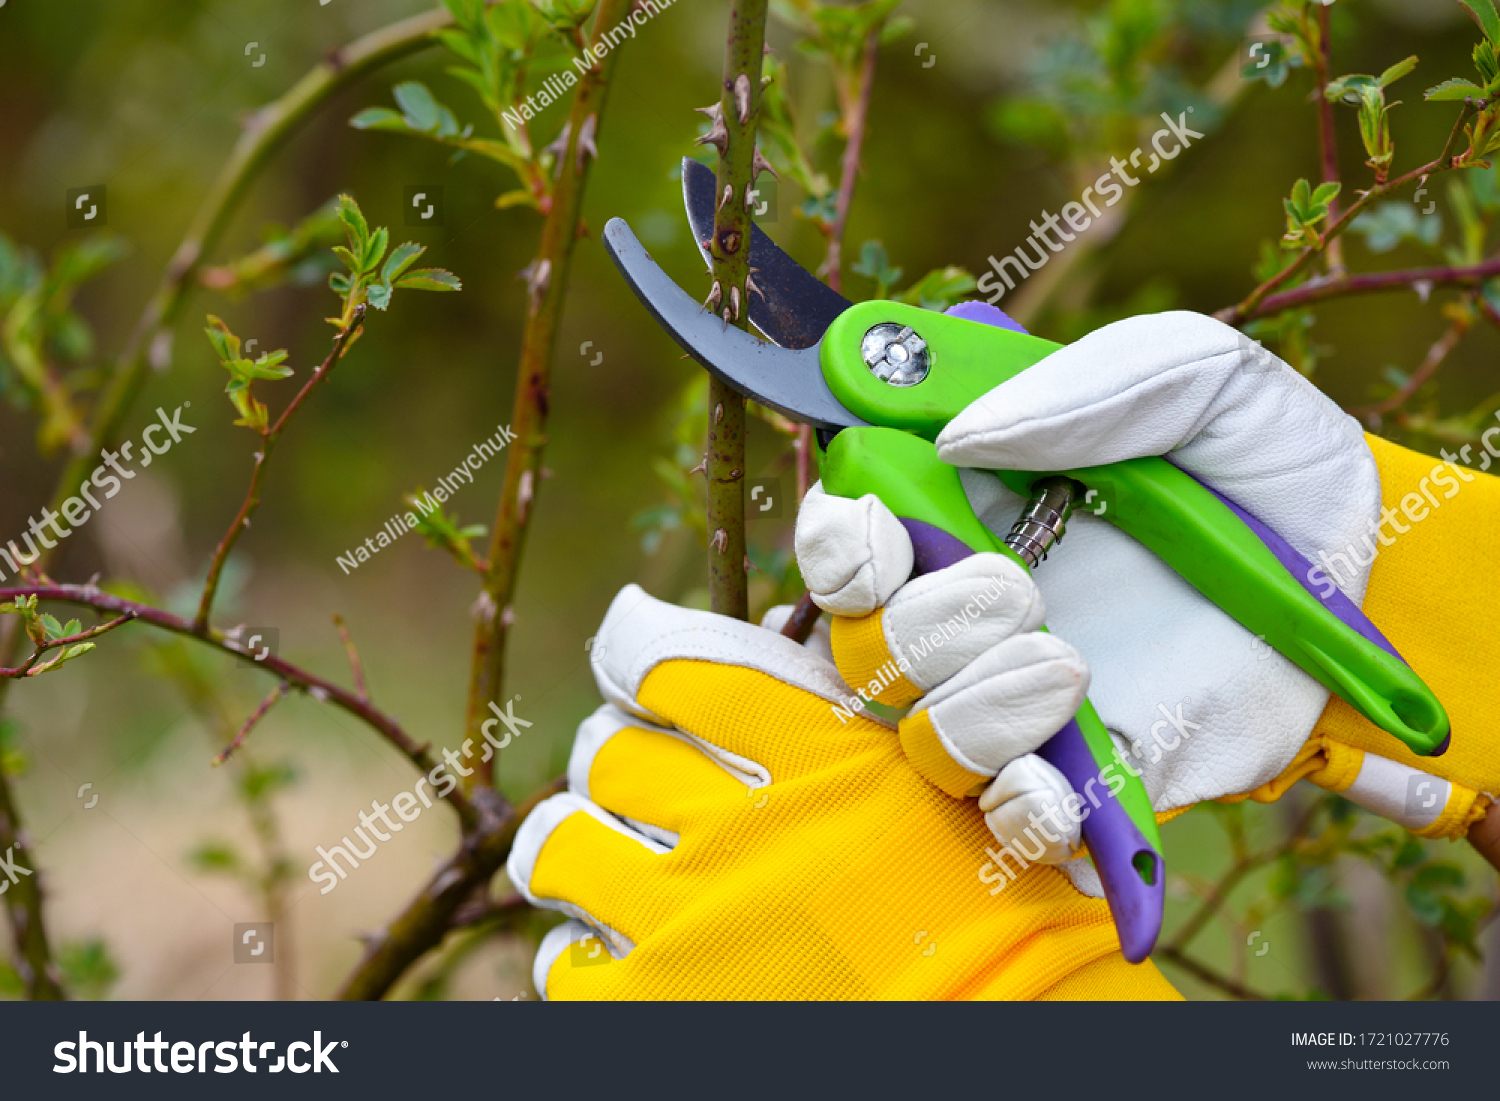 Spring pruning roses in the garden, gardener's hands with secateur #1721027776